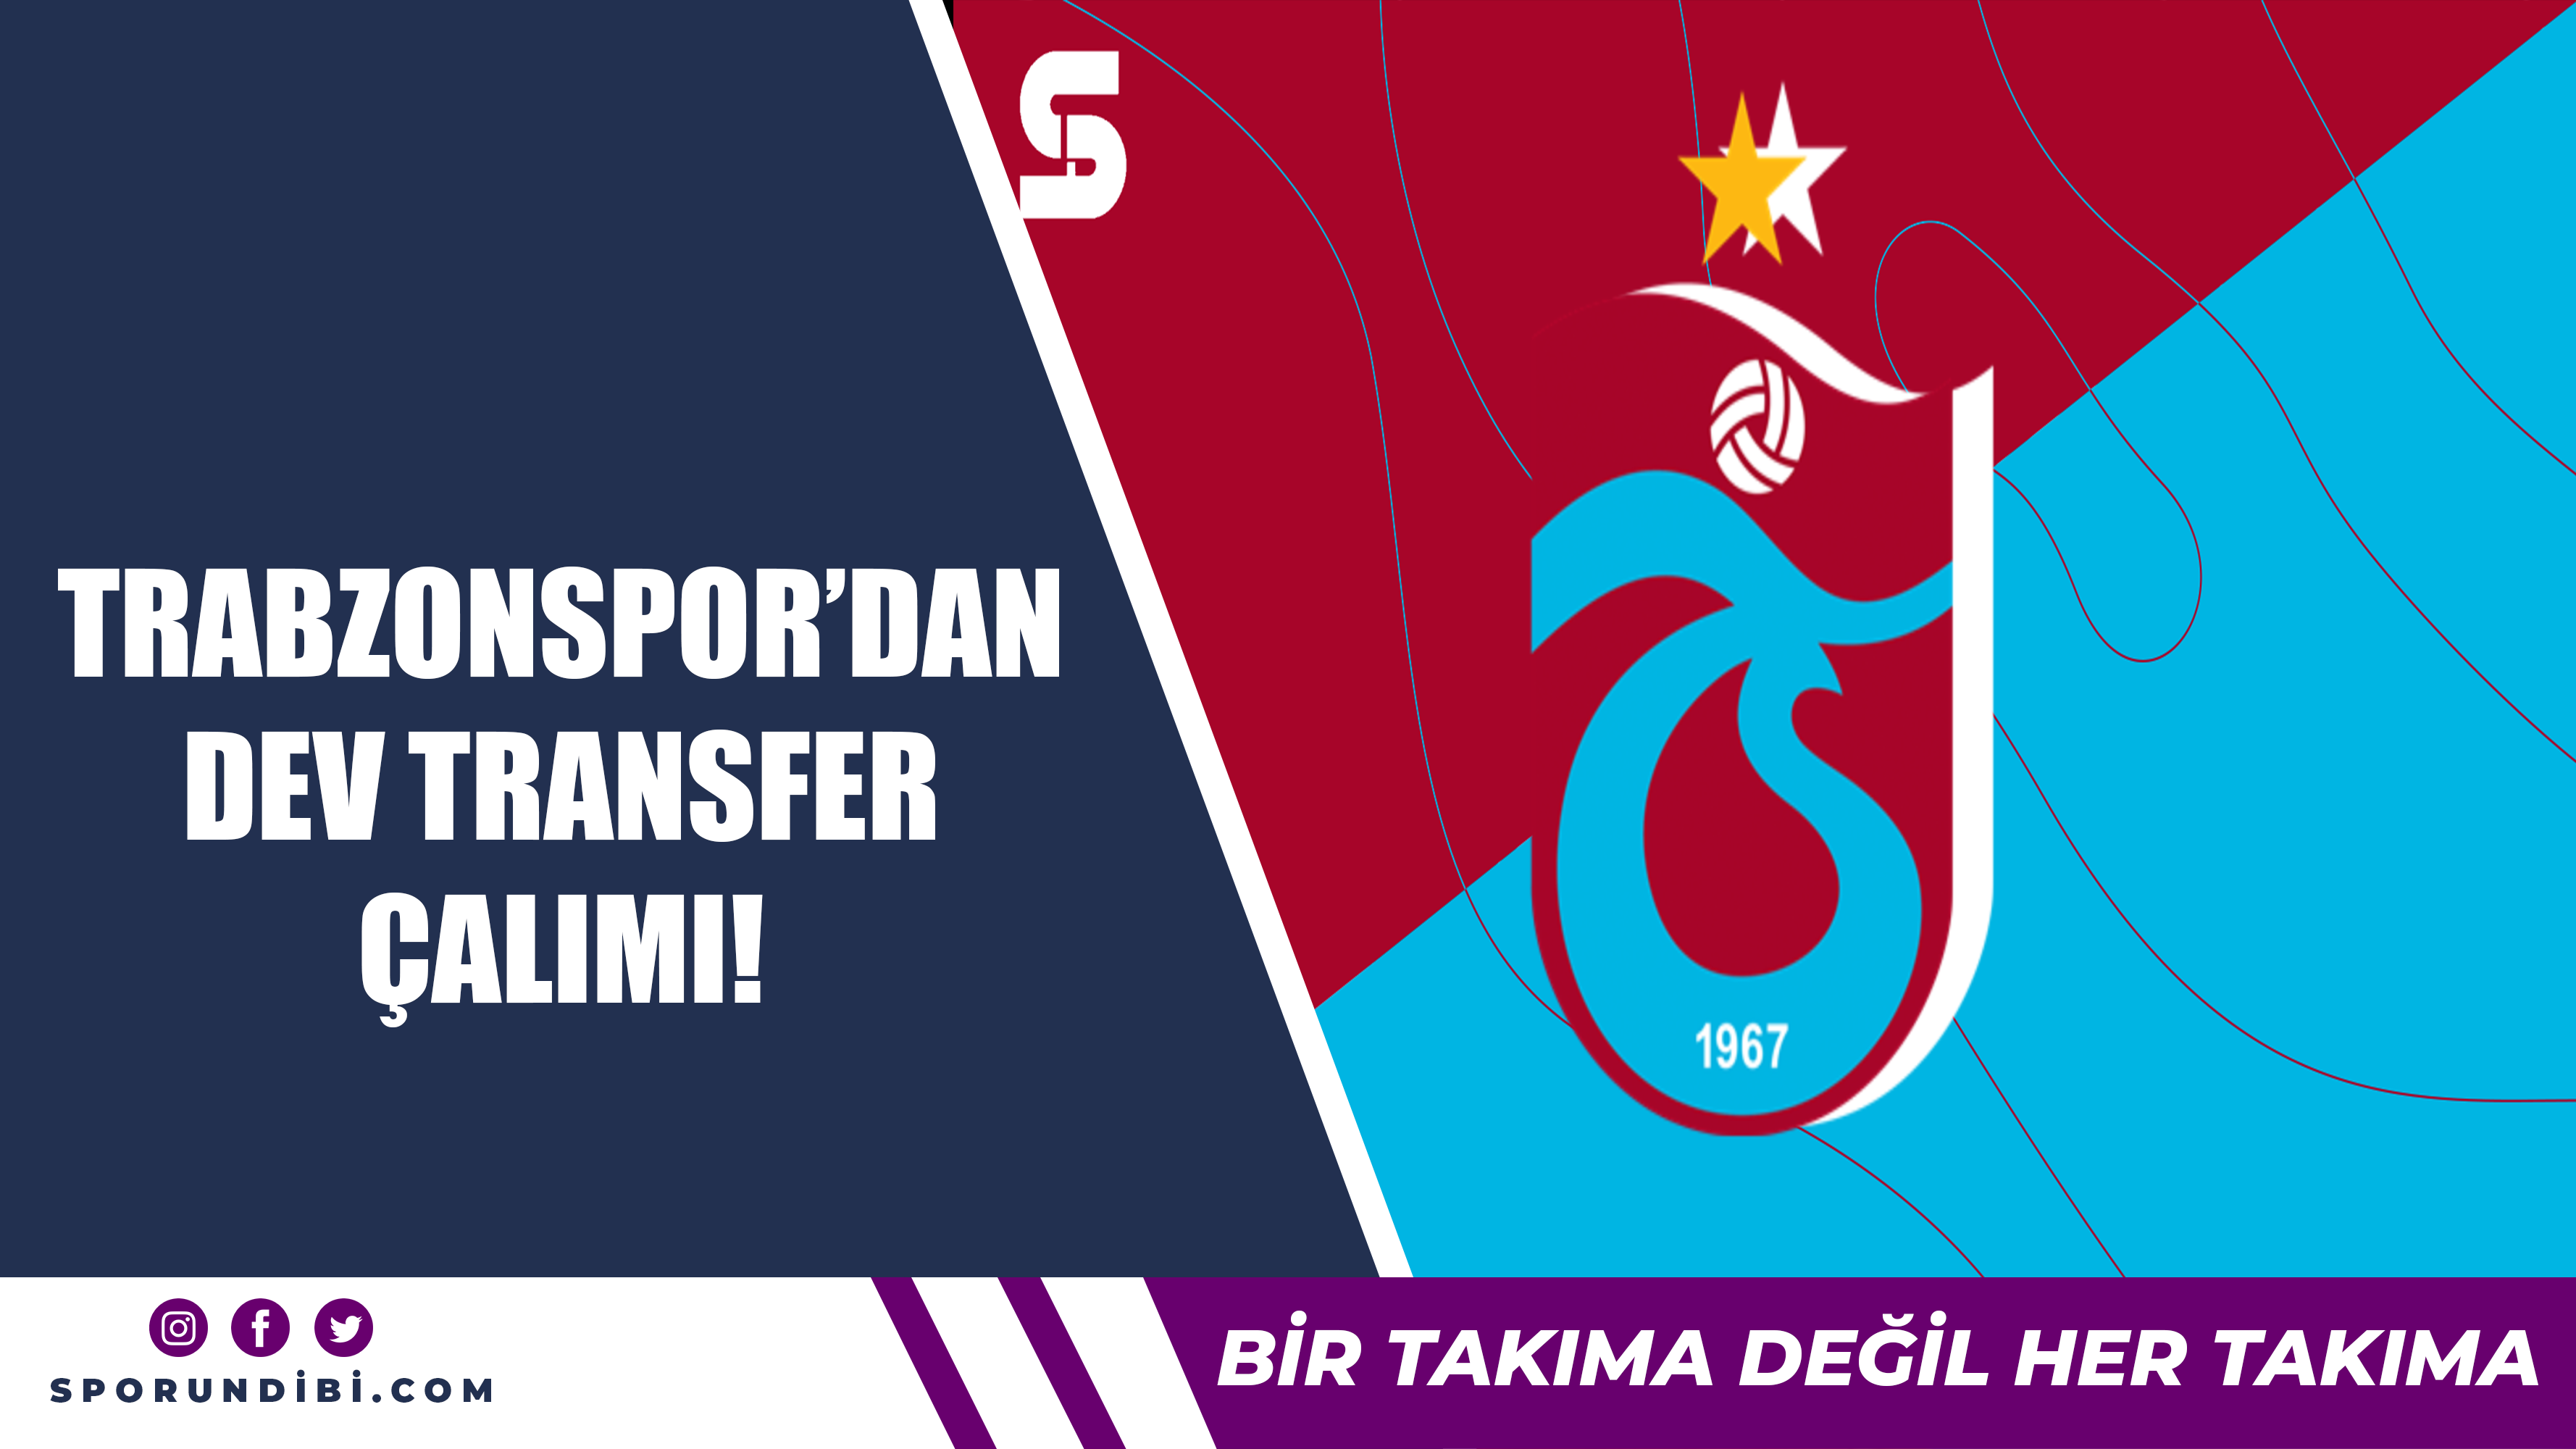 Trabzonspor'dan dev transfer çalımı!